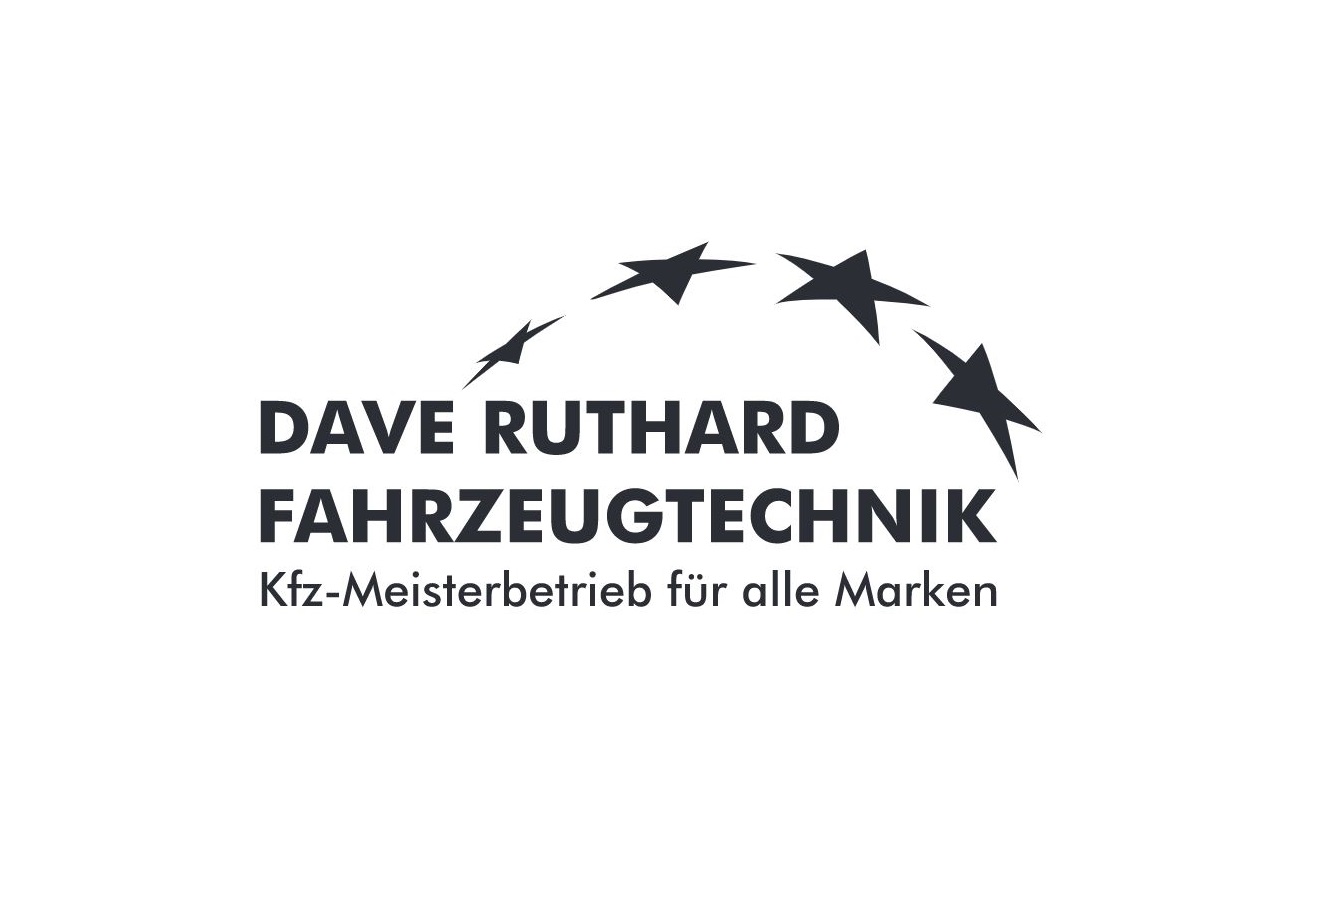 DAVE RUTHARD FAHRZEUGTECHNIK